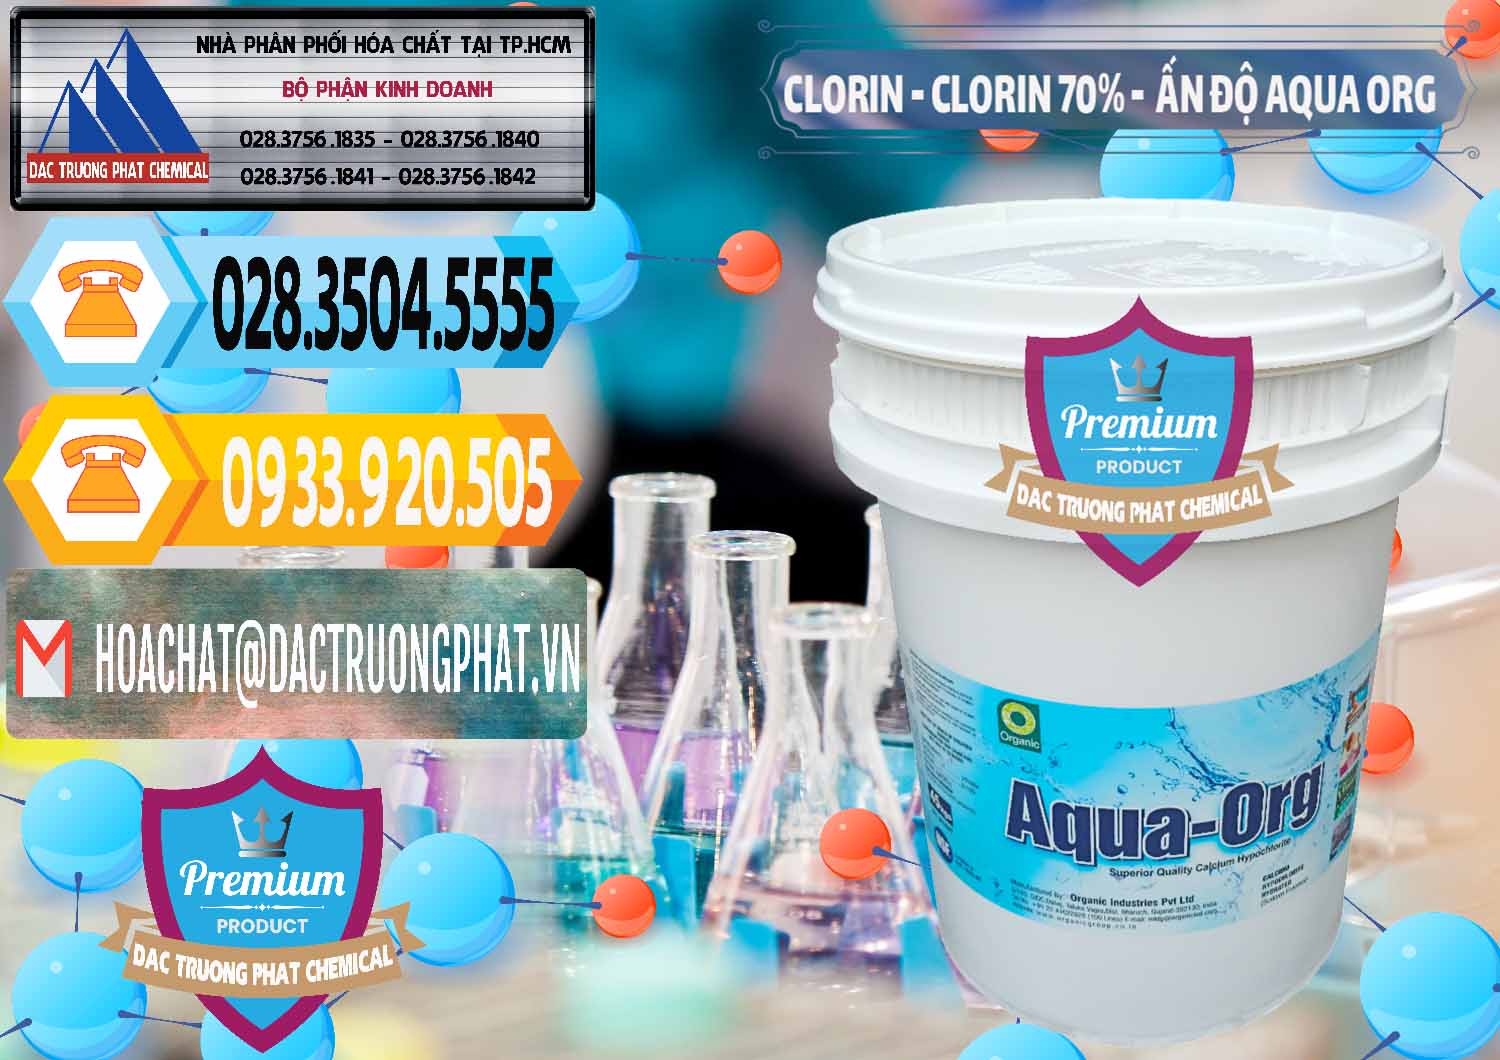 Nơi kinh doanh & bán Chlorine – Clorin Ấn Độ Aqua ORG Organic India - 0051 - Cty bán - cung cấp hóa chất tại TP.HCM - hoachattayrua.net